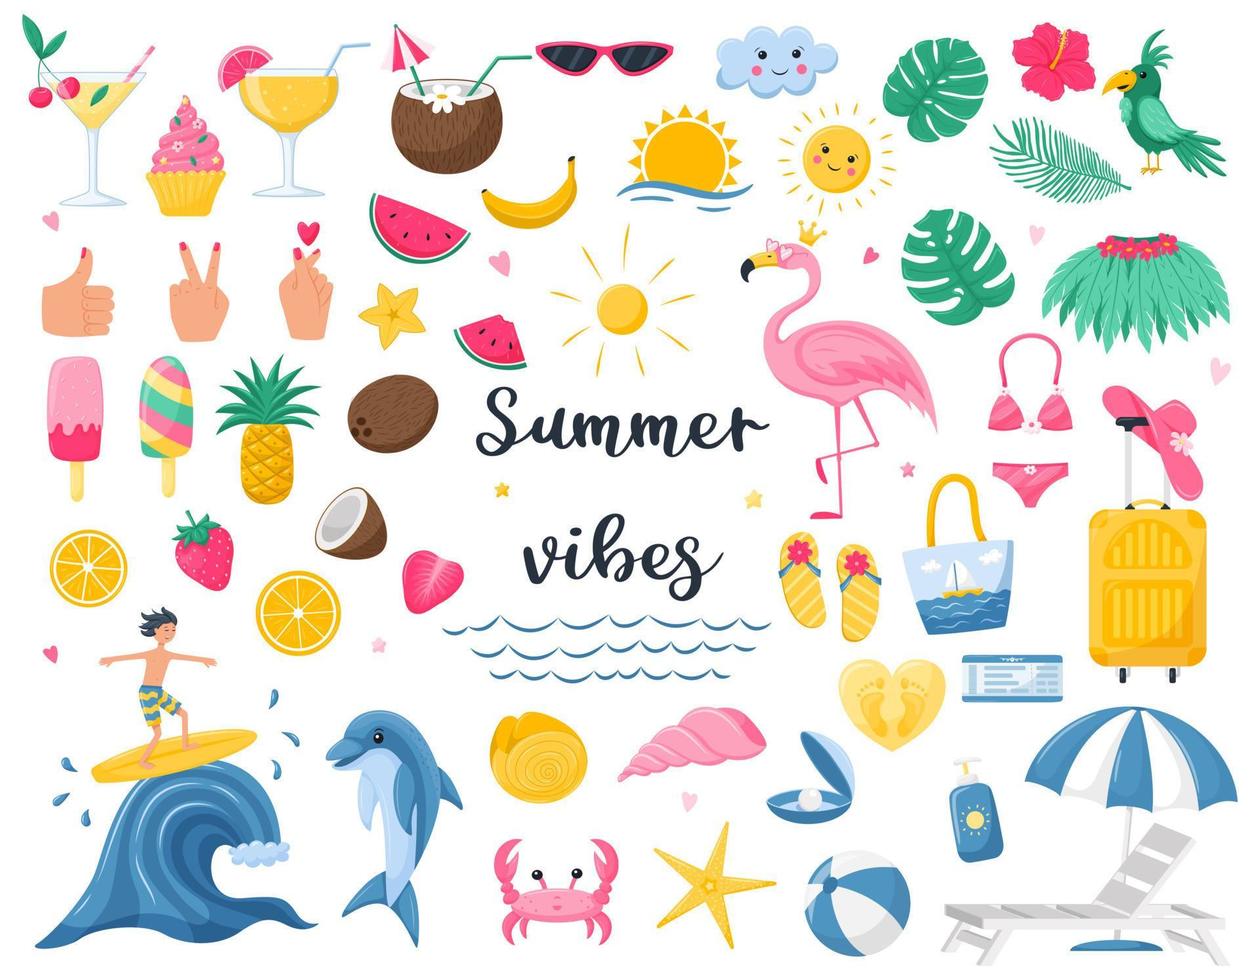 un conjunto de elementos decorativos de verano brillante. fruta, accesorios de playa, flamenco, surfista, fruta. lindas ilustraciones vectoriales en estilo de caricatura plana aisladas en fondo blanco. vector